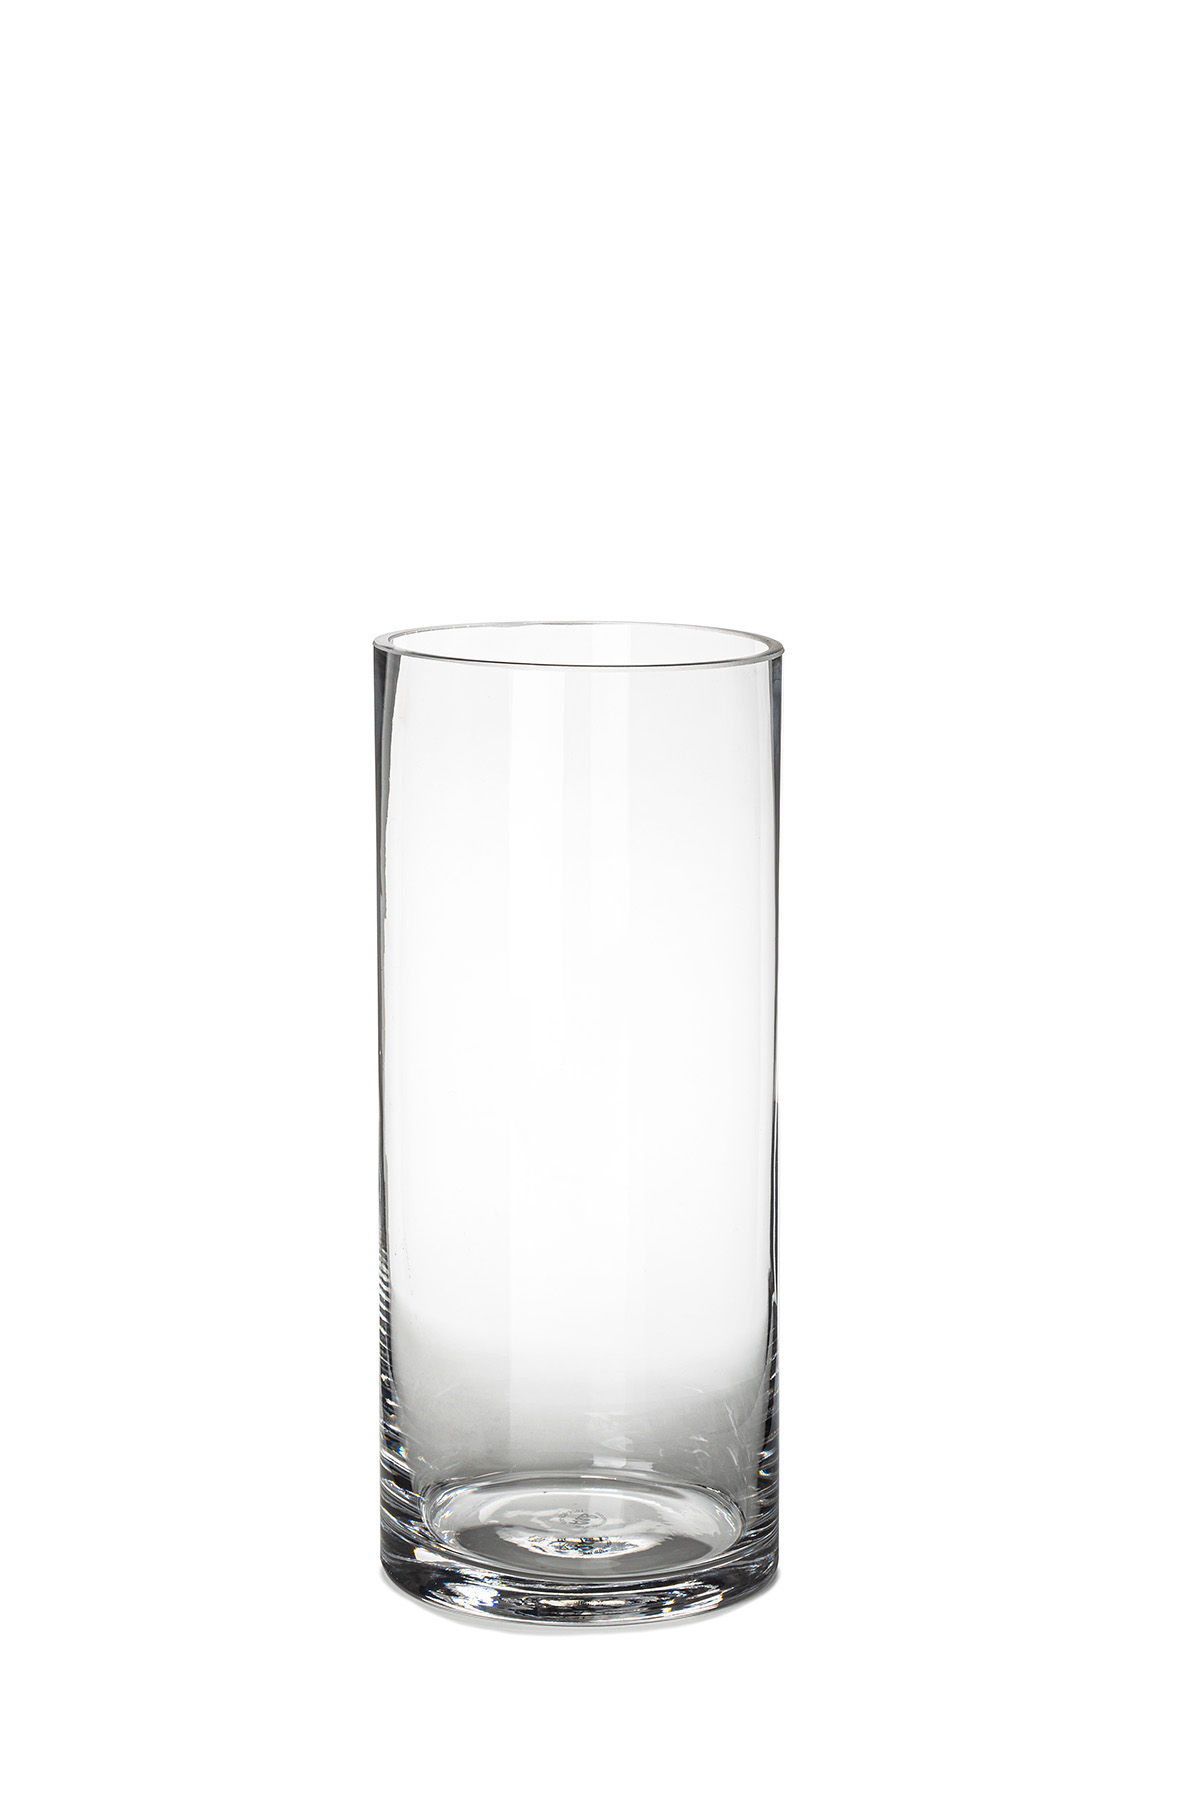 9 inch cylinder vase